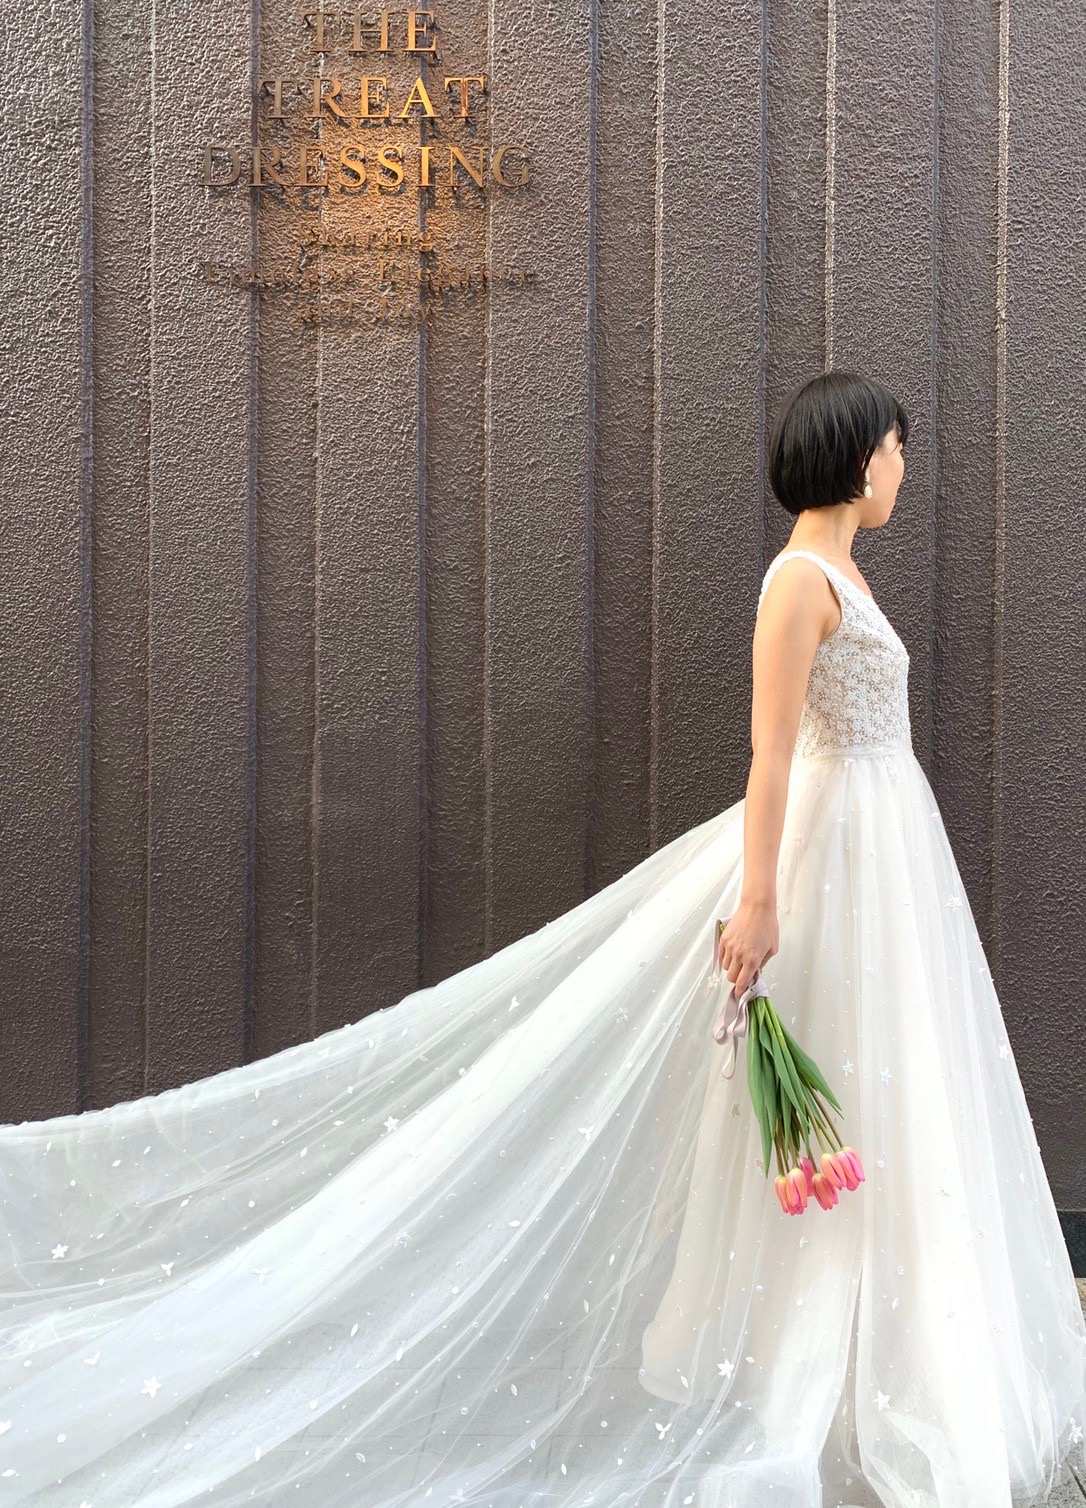 ロングトレーンが魅力的なReem Acra(リーム・アクラ)の新作ウェディングドレス